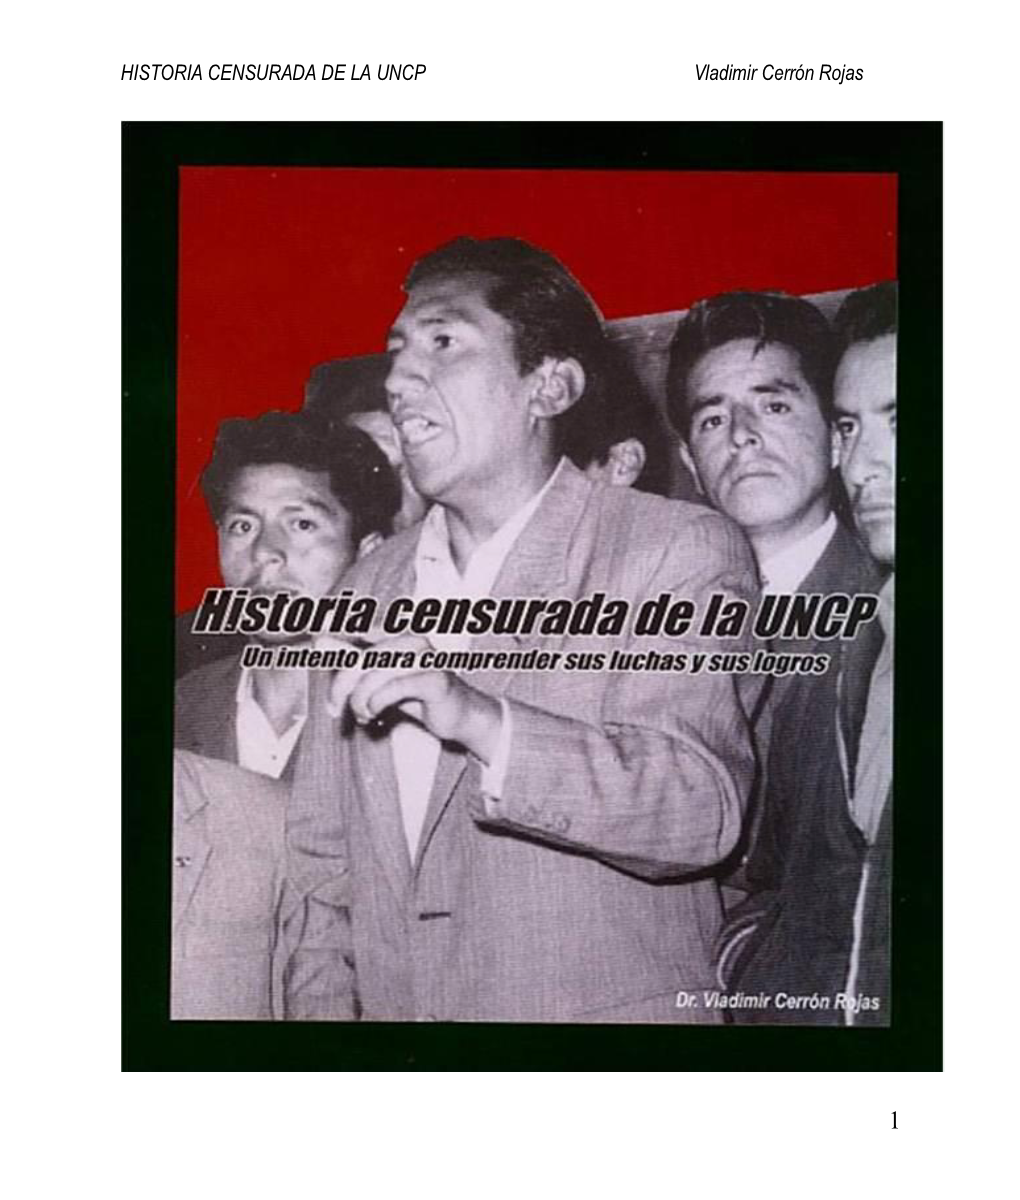 HISTORIA CENSURADA DE LA UNCP Vladimir Cerrón Rojas